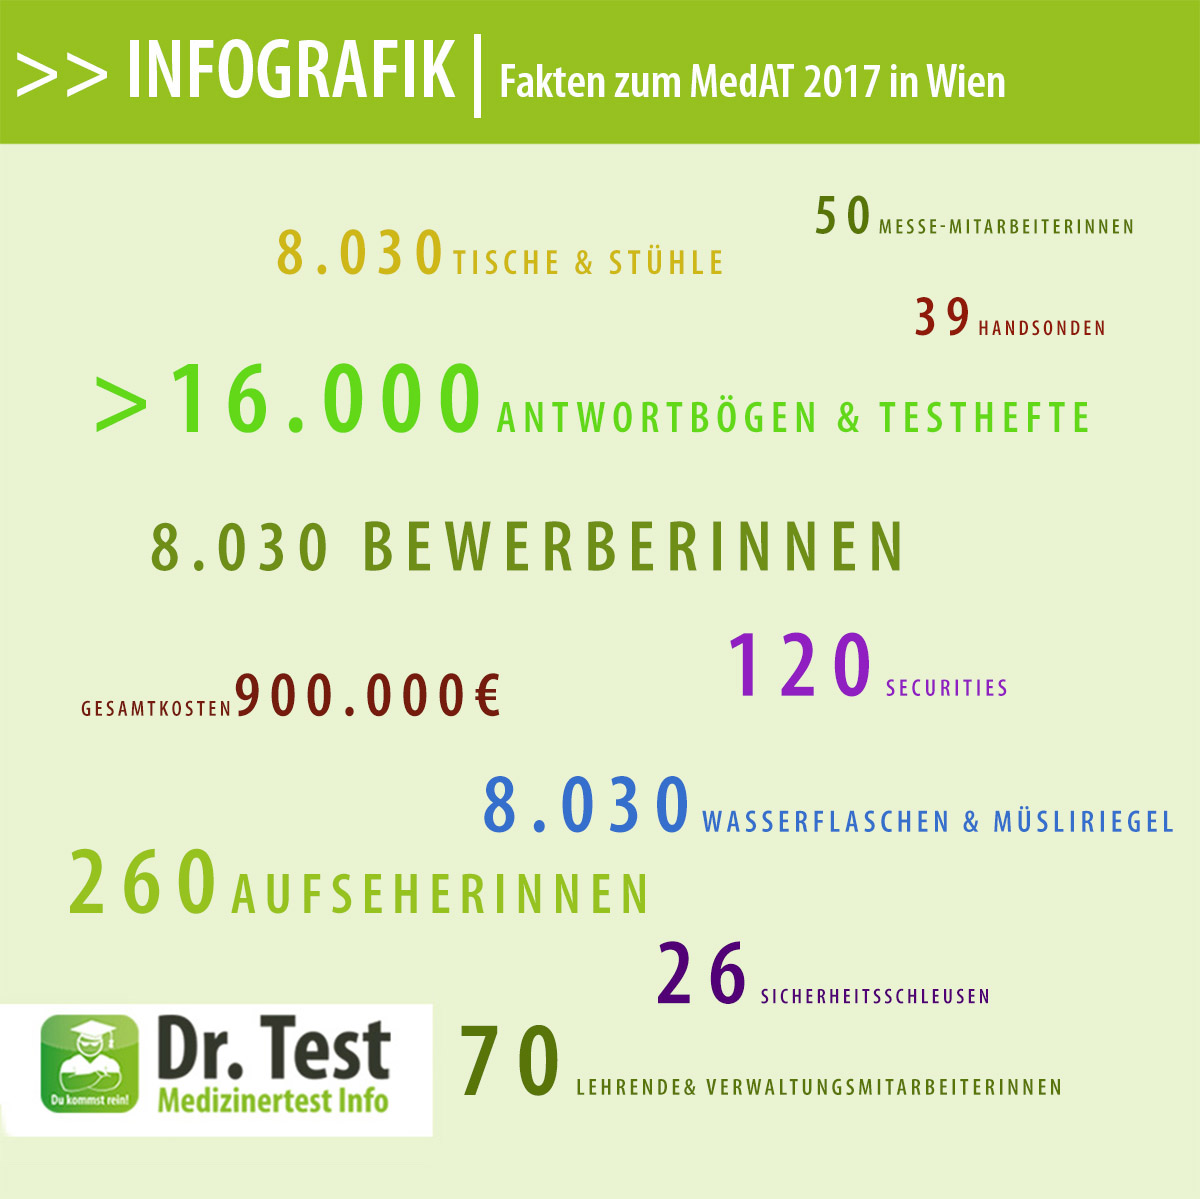 Zahlen rund um den MedAT in Wien 2017